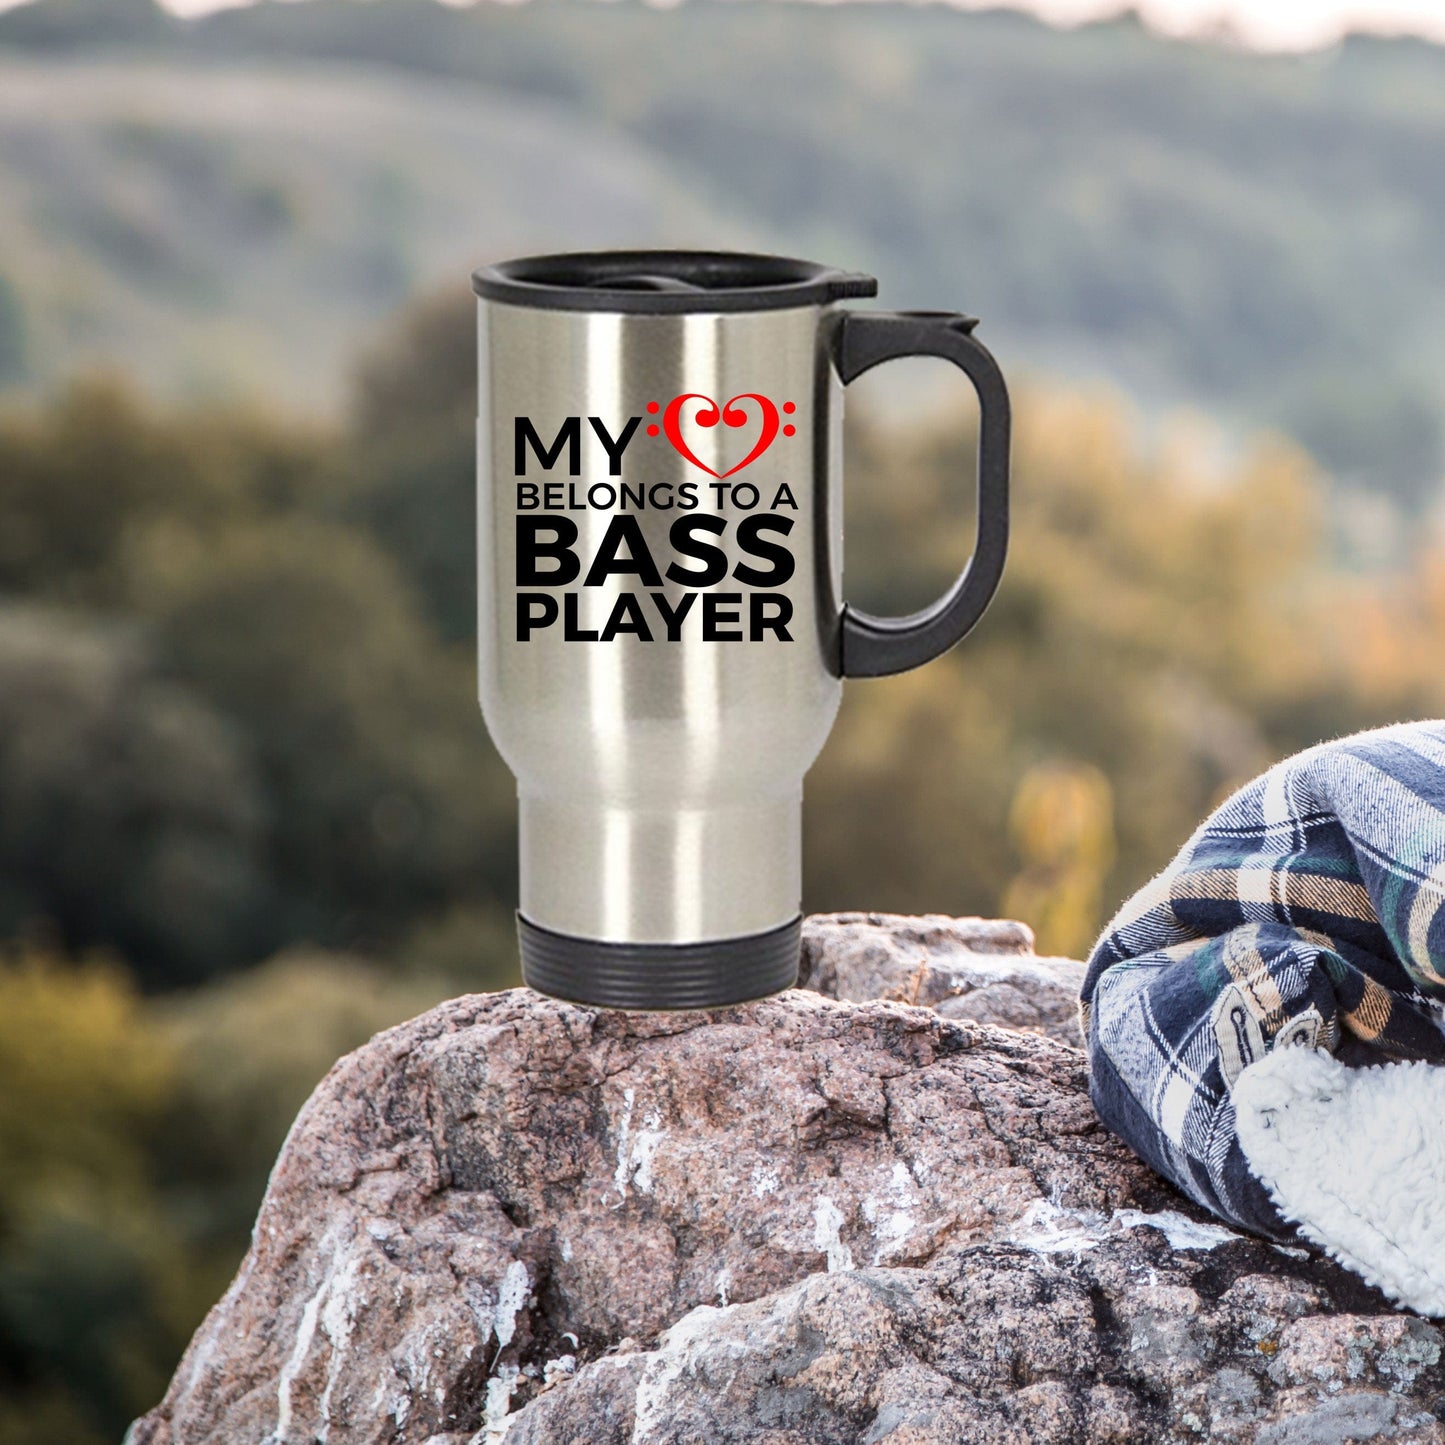 Bass Player Travel Mug - My Heart Belongs to a Bass Player